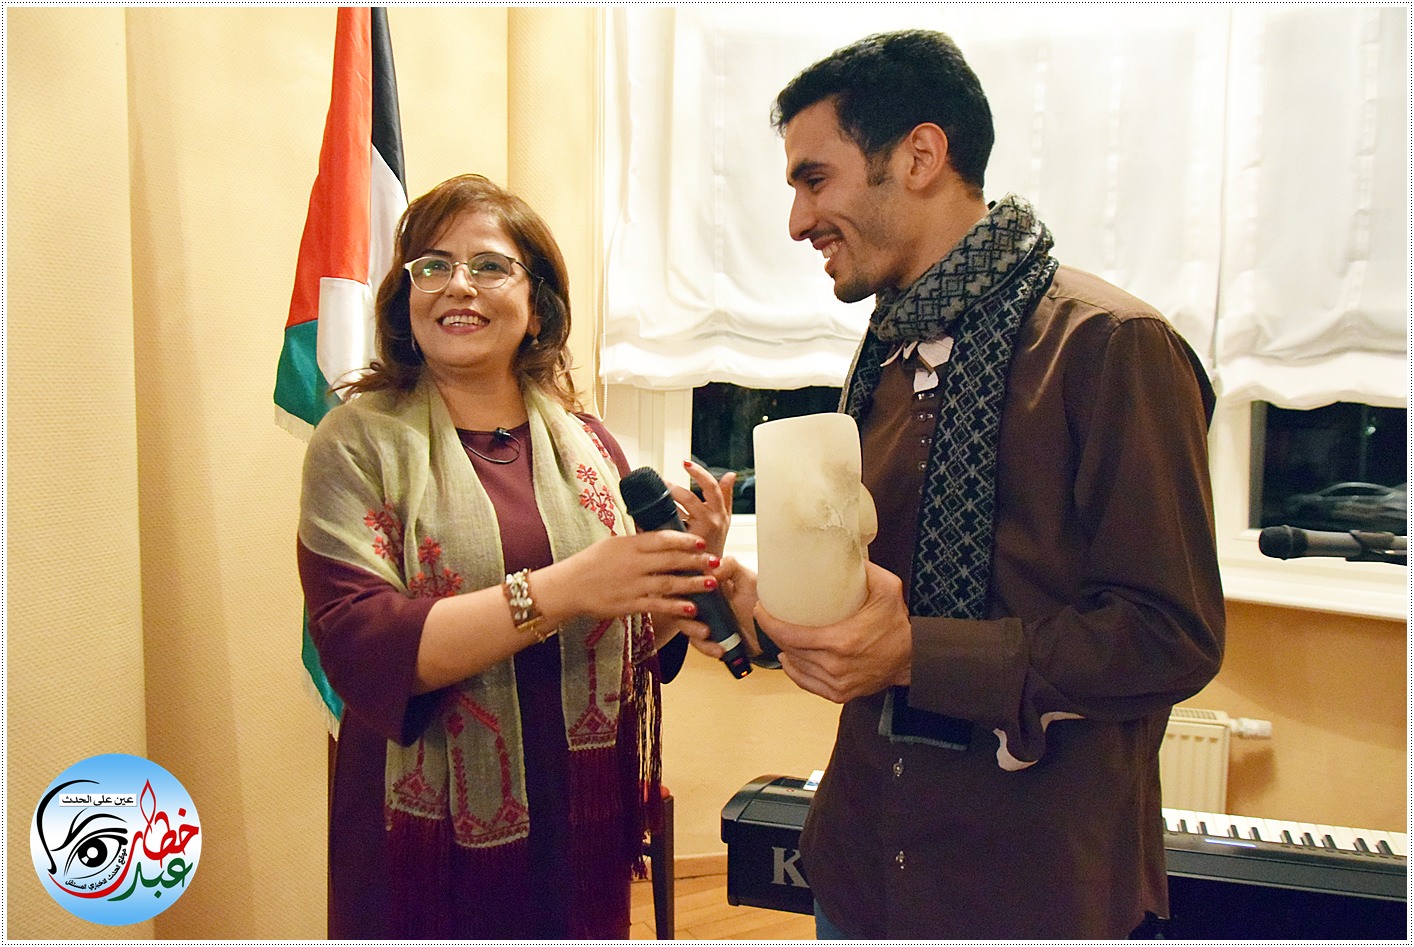 سفيرة فلسطين لدى ألمانيا الدكتورة خلود دعيبس تكرم الفنان ايهم احمد